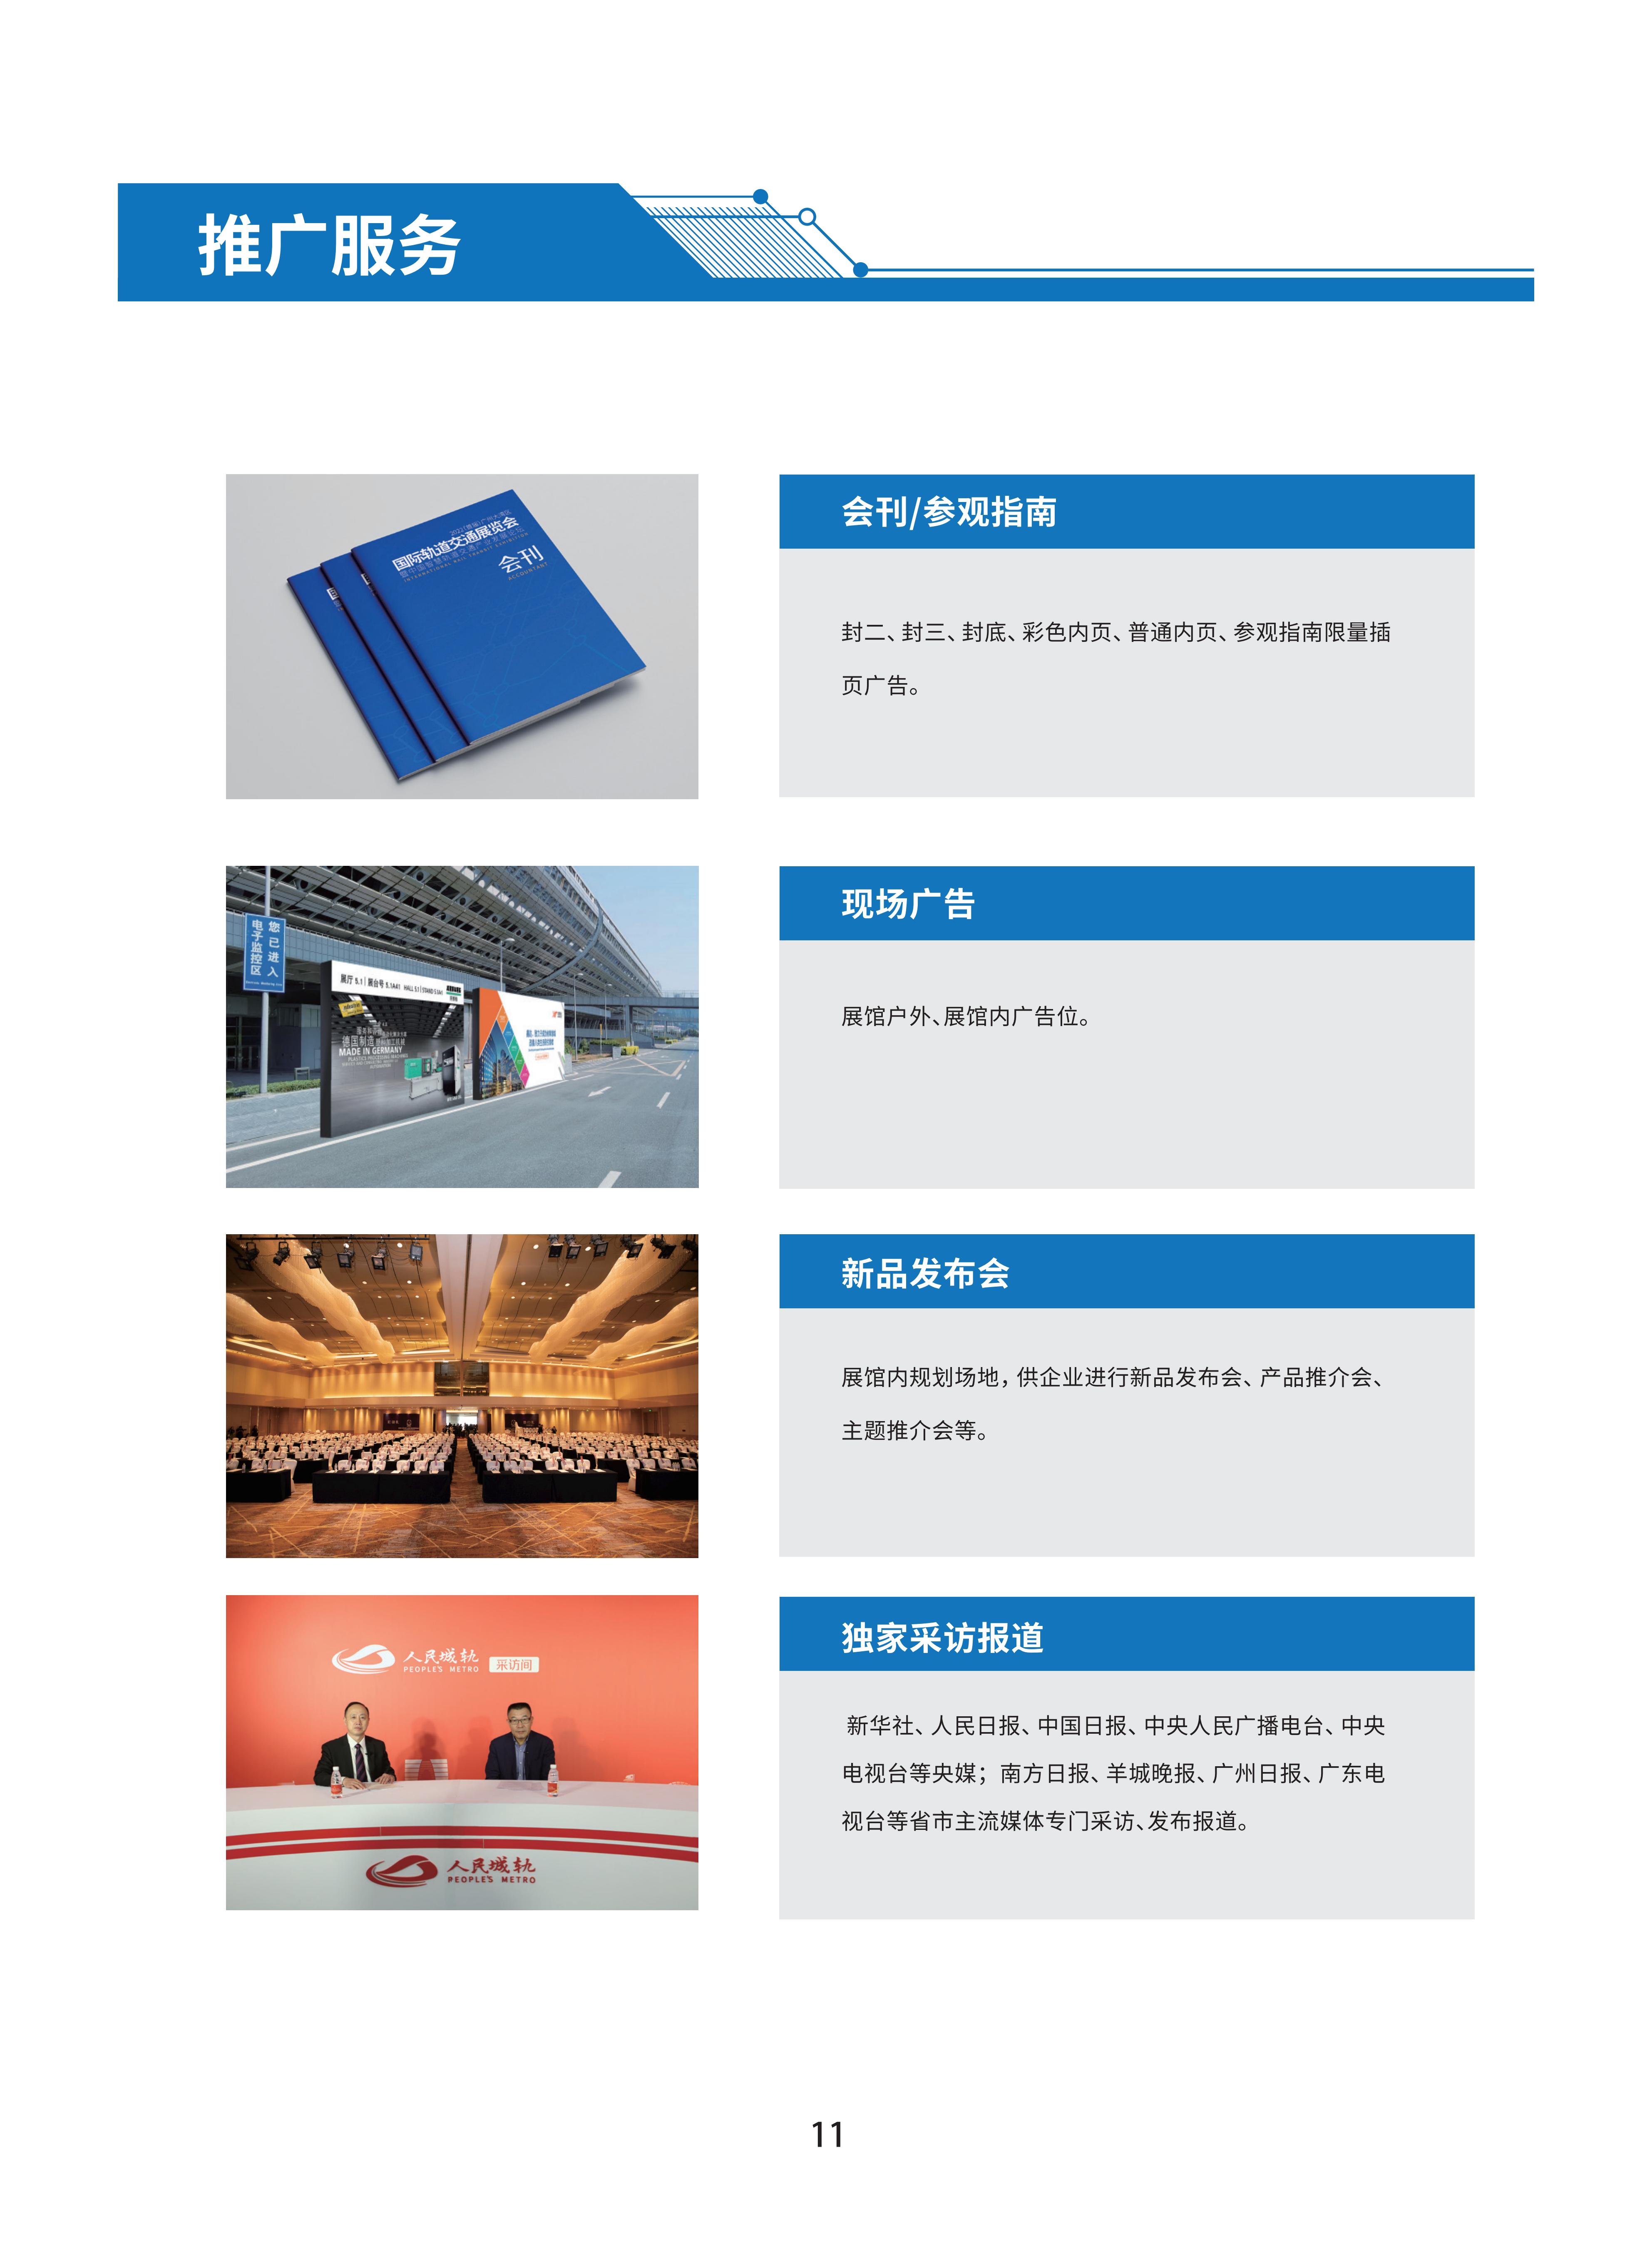 首届广州国际轨道交通展招商手册-20230306_13.jpg